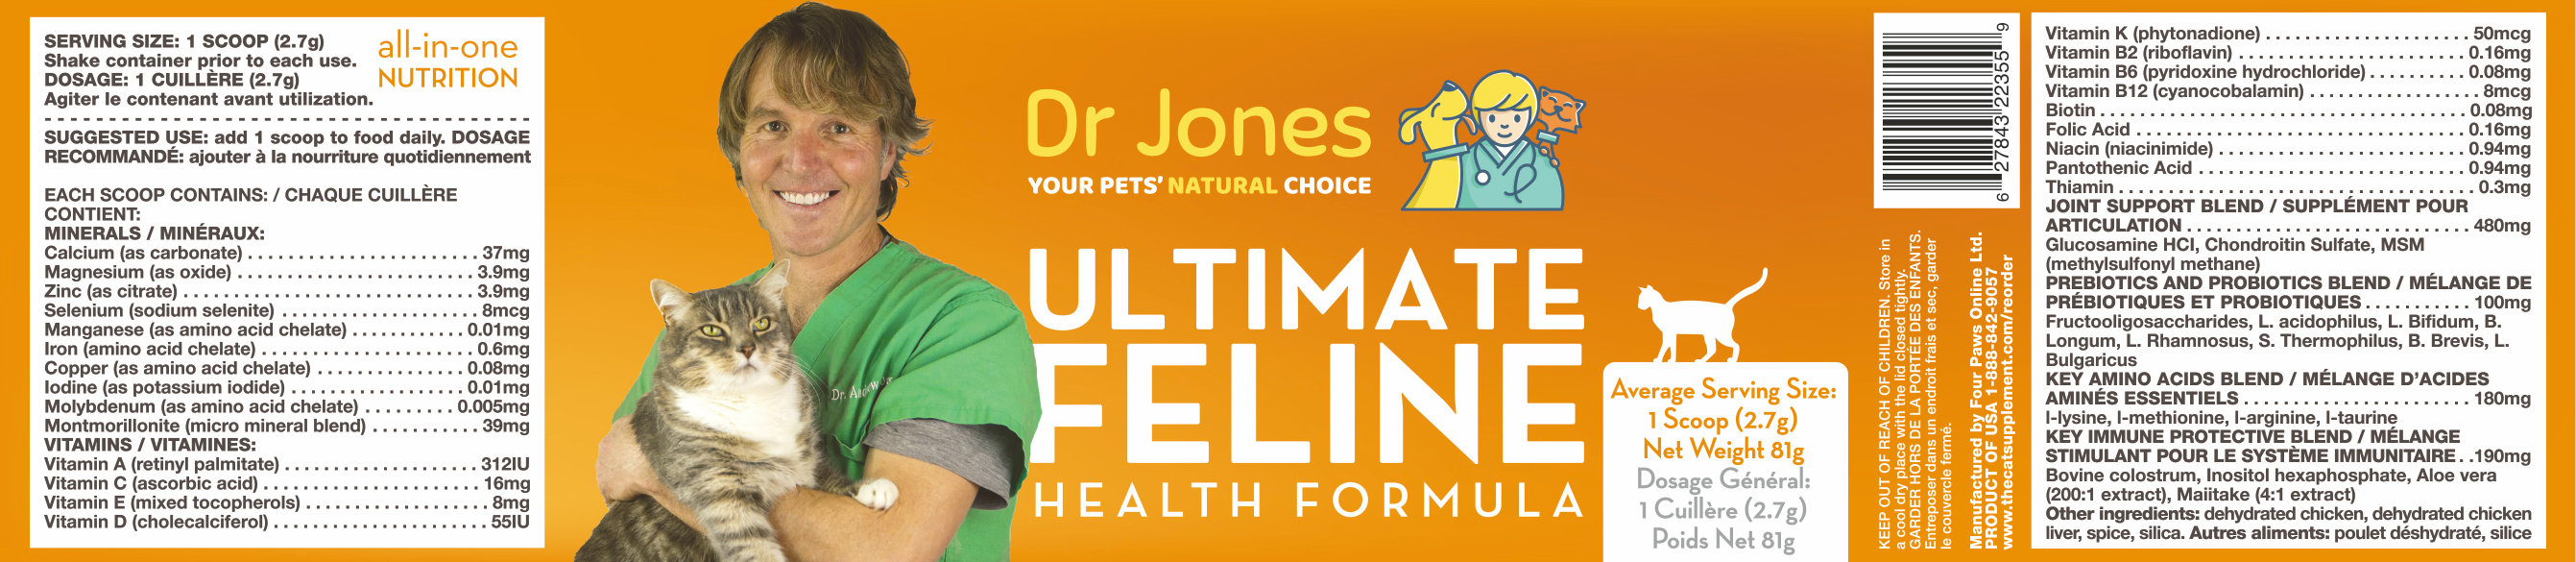 Dr. Jones' Ultimate Feline Health Formula label